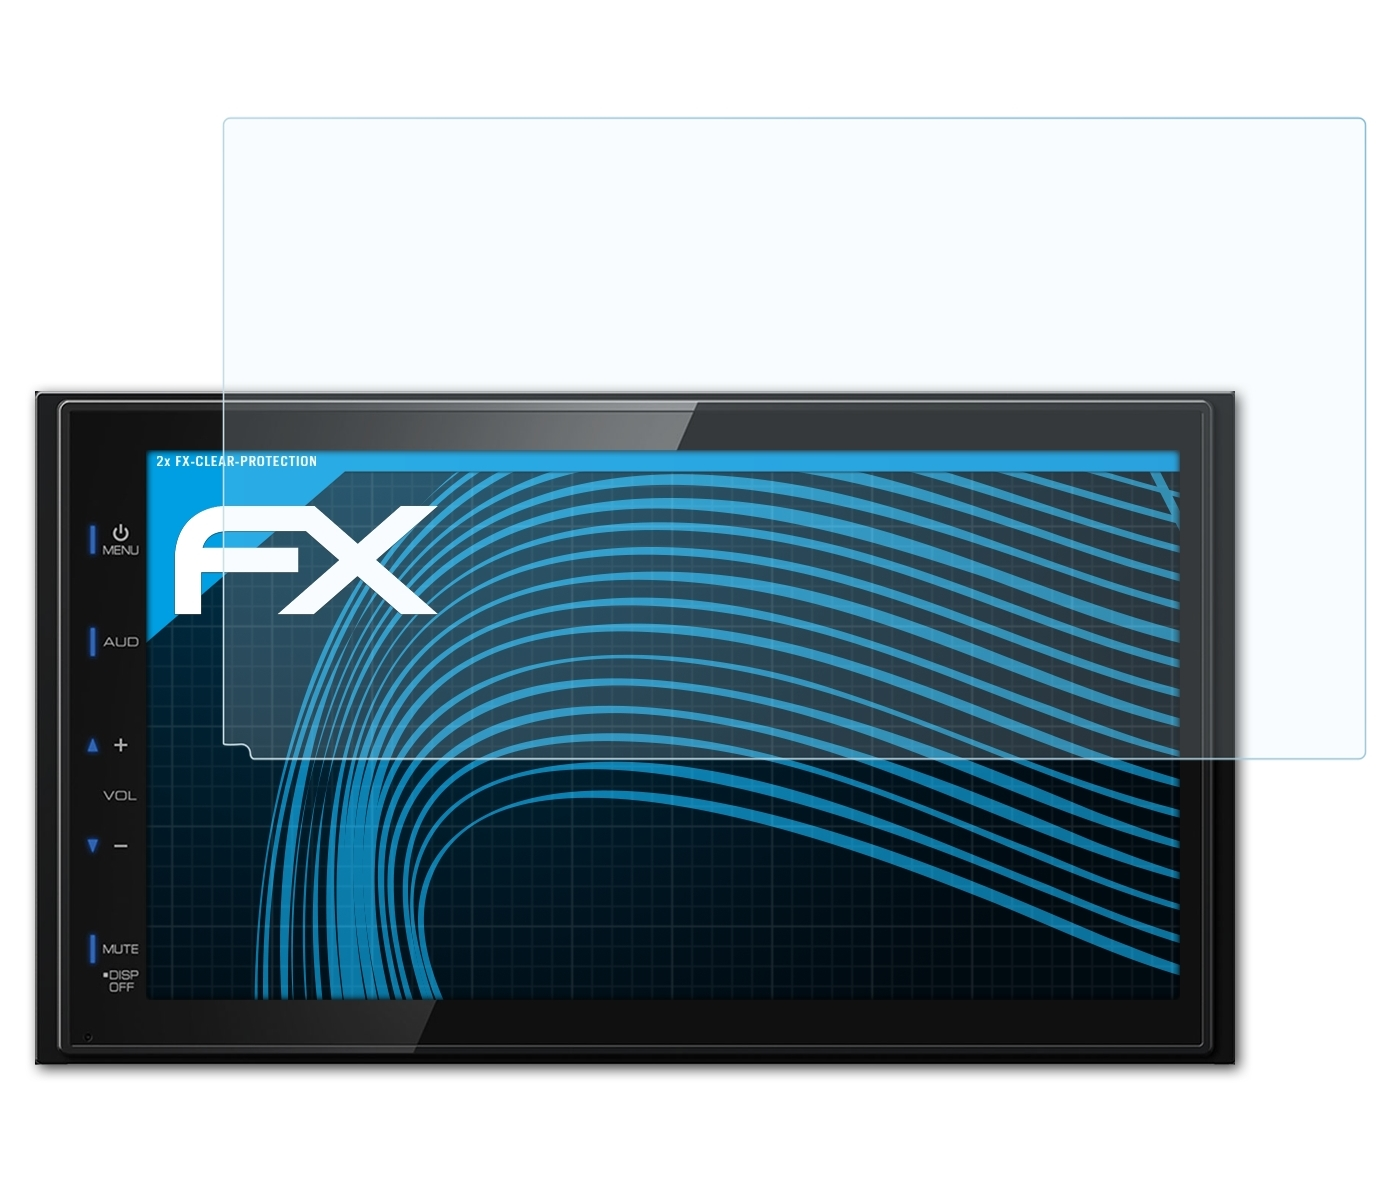 ATFOLIX 2x FX-Clear DMX110BT) Displayschutz(für Kenwood